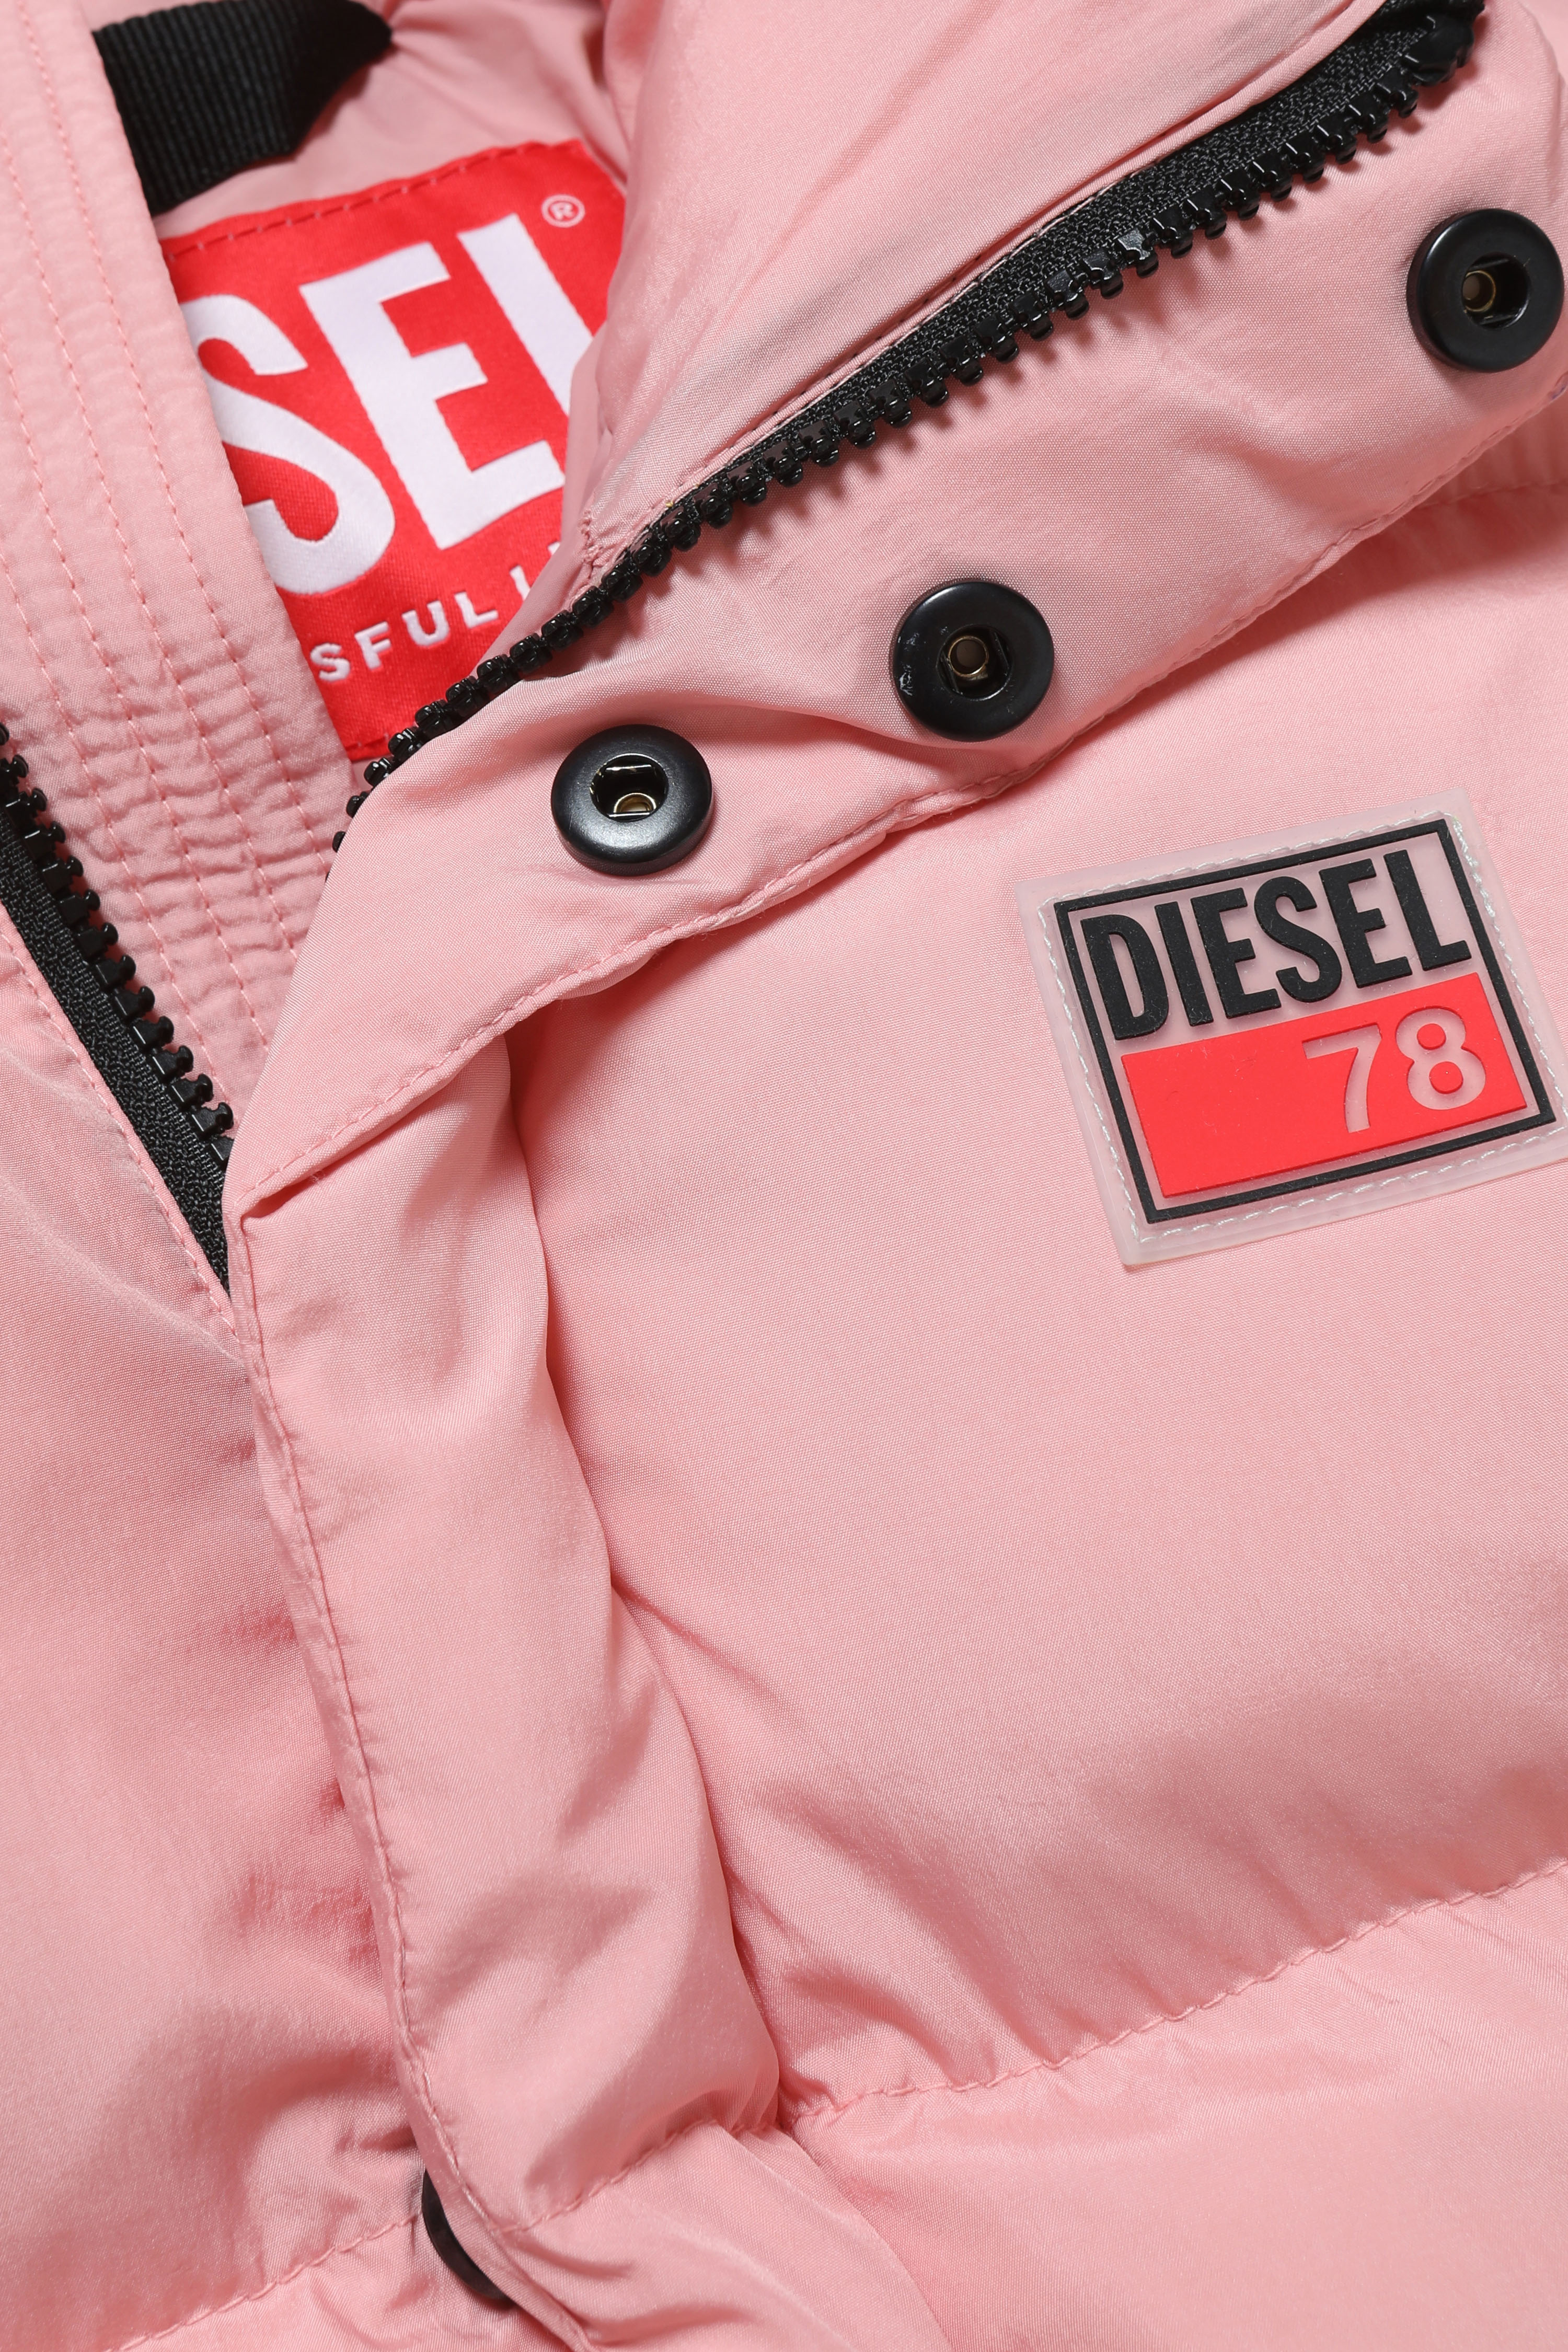 Diesel - JPIL, Pink - Image 3